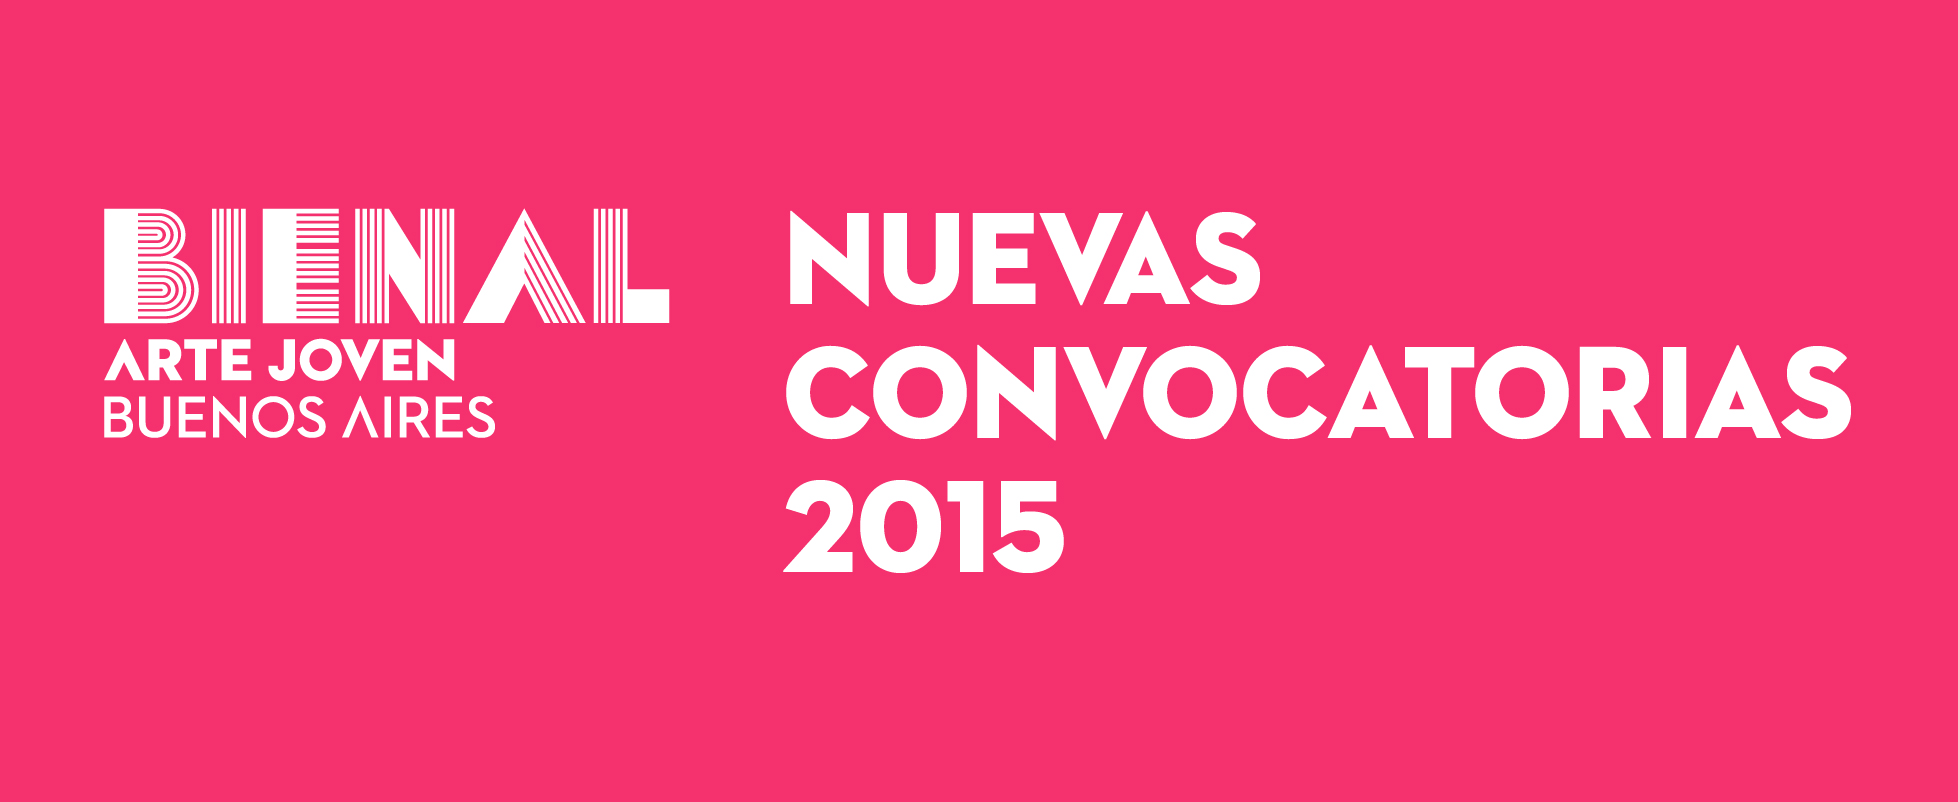 Bienal Arte Joven Buenos Aires: NUEVAS Convocatorias 2015